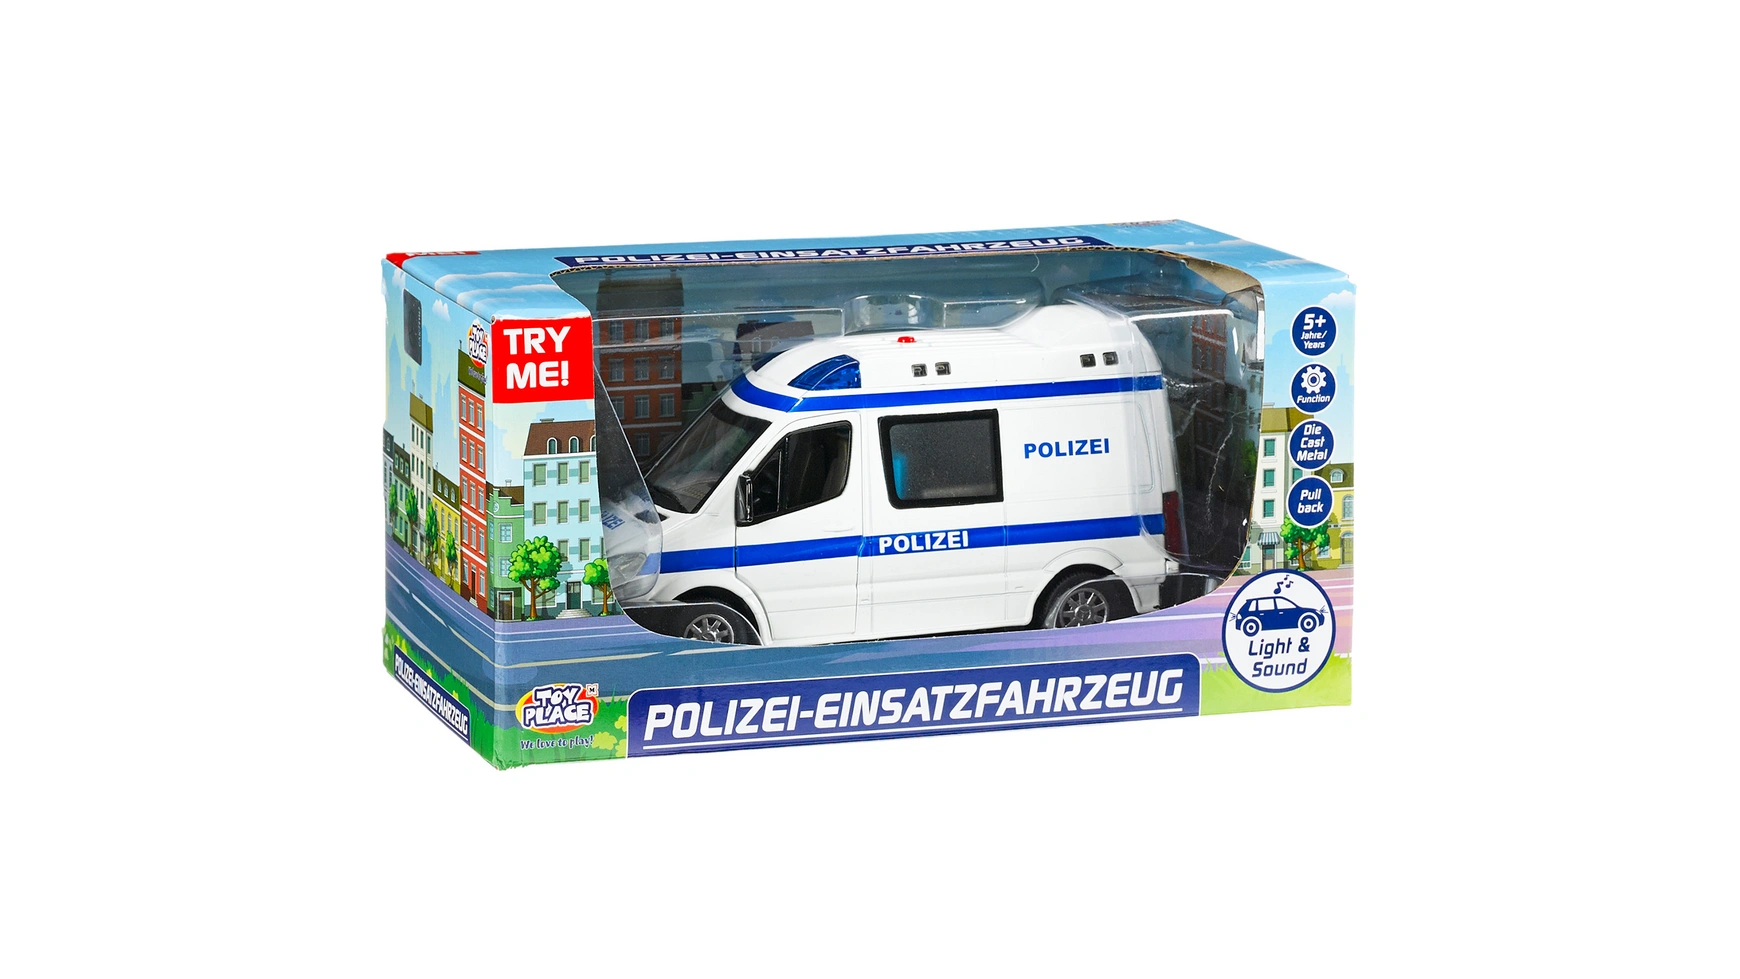 Мюллер Toy Place Полицейская машина скорой помощи со светом и звуком 1:32